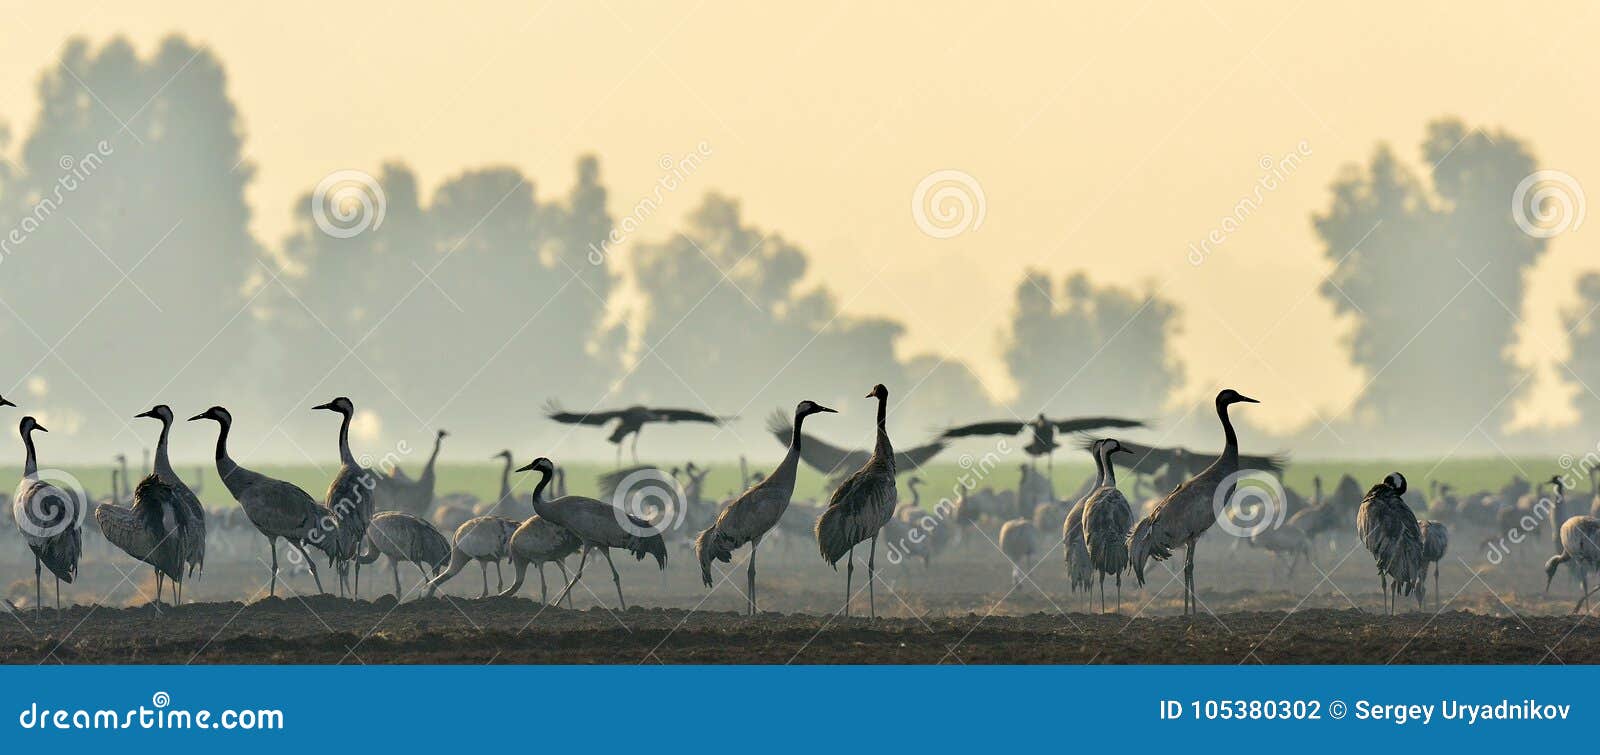 cranes in a field foraging. common crane, grus grus.